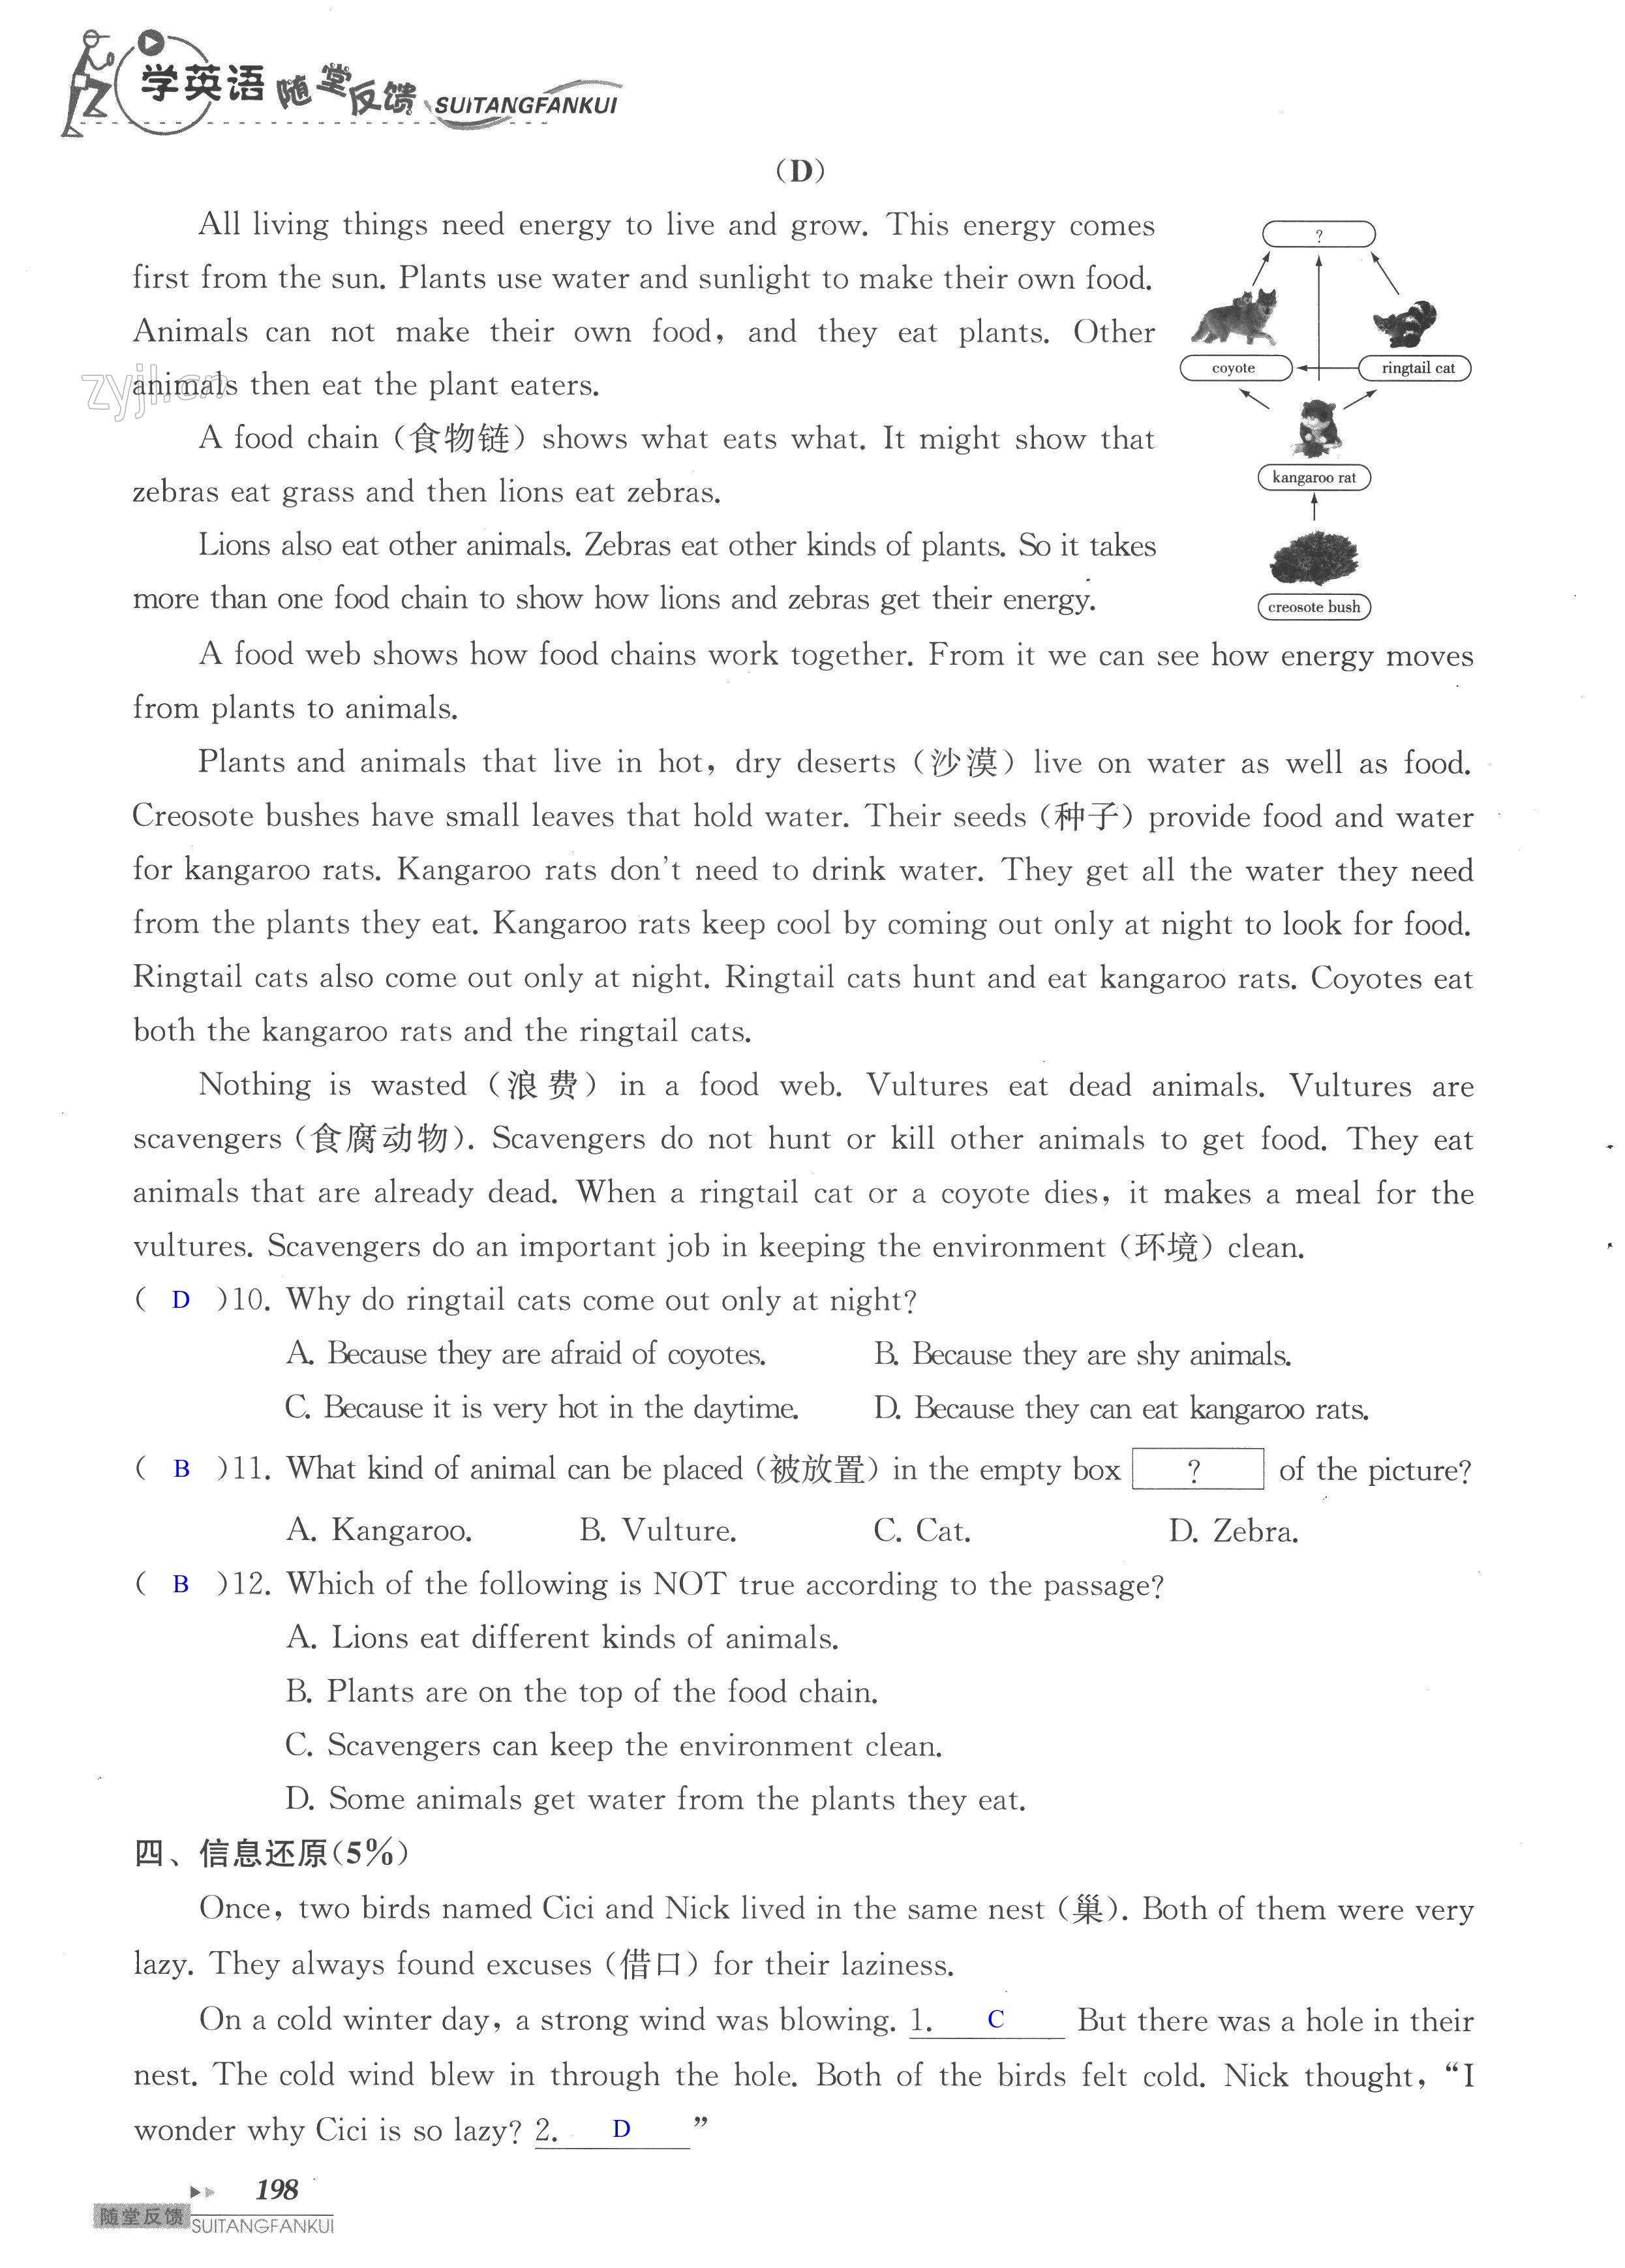 单元综合测试卷 Test for Unit 6 of 8A - 第198页